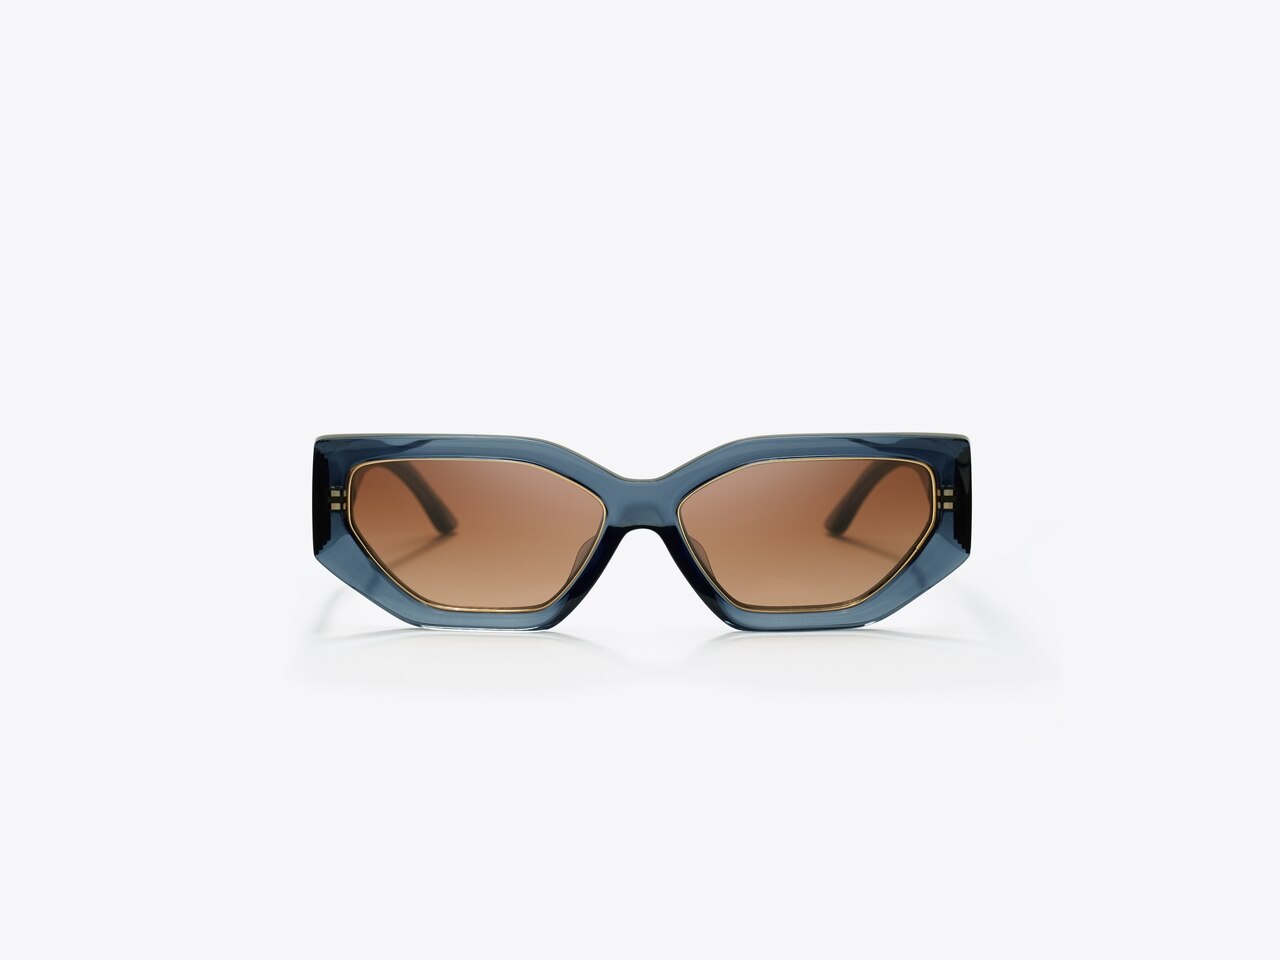 Tory Burch Women's Sunglasses, TY9070U - Dark Tortoise